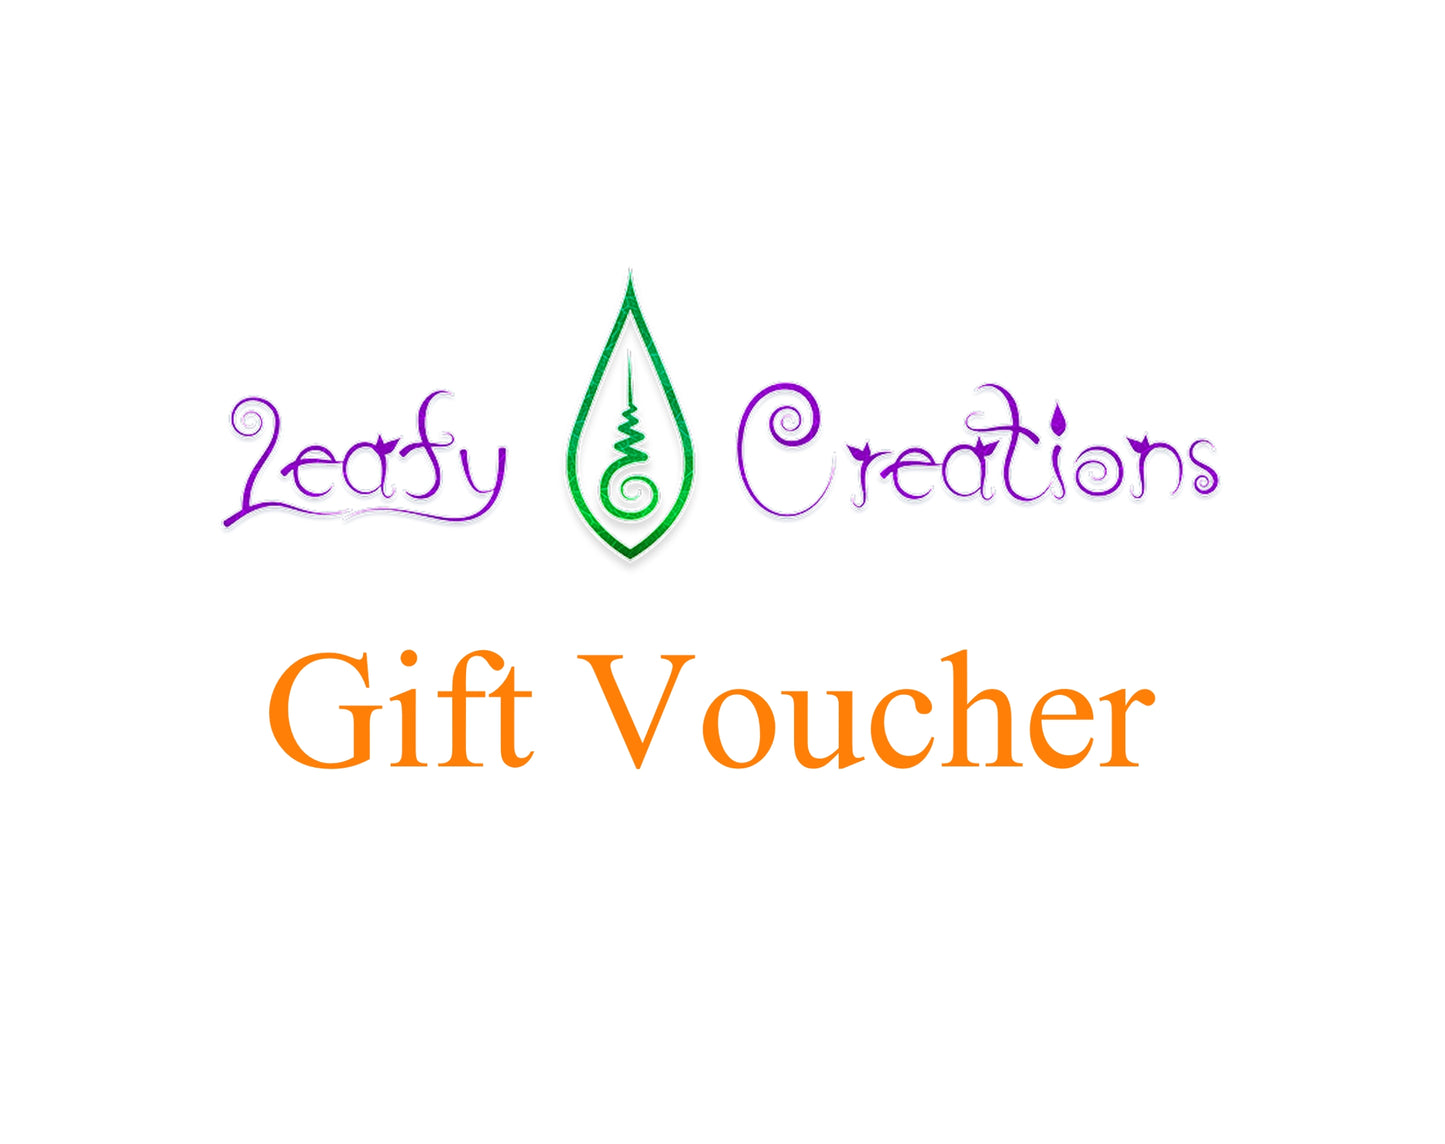 Leafy Creations $100 Gift Voucher